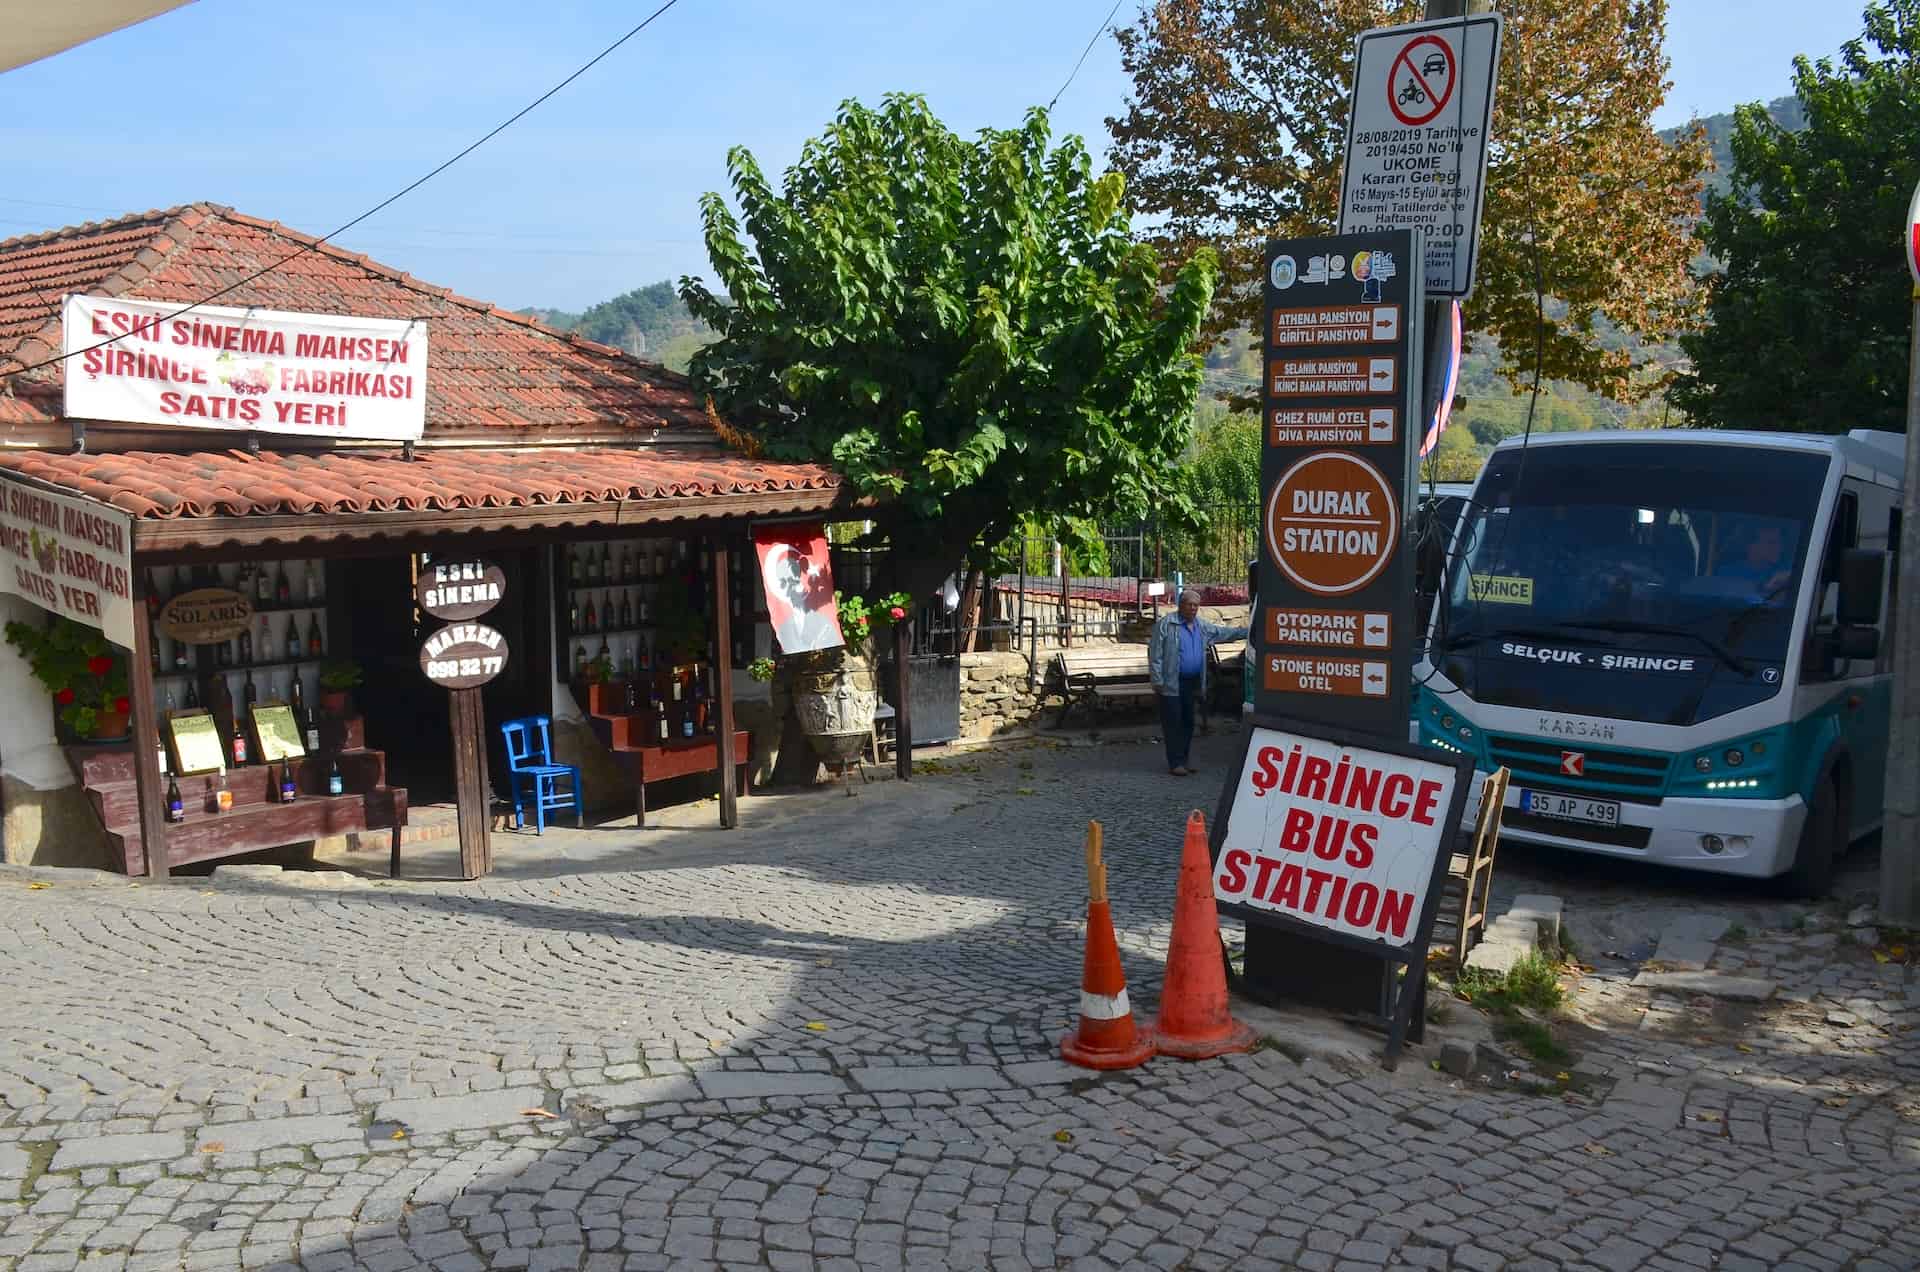 Bus station in Şirince, Turkey